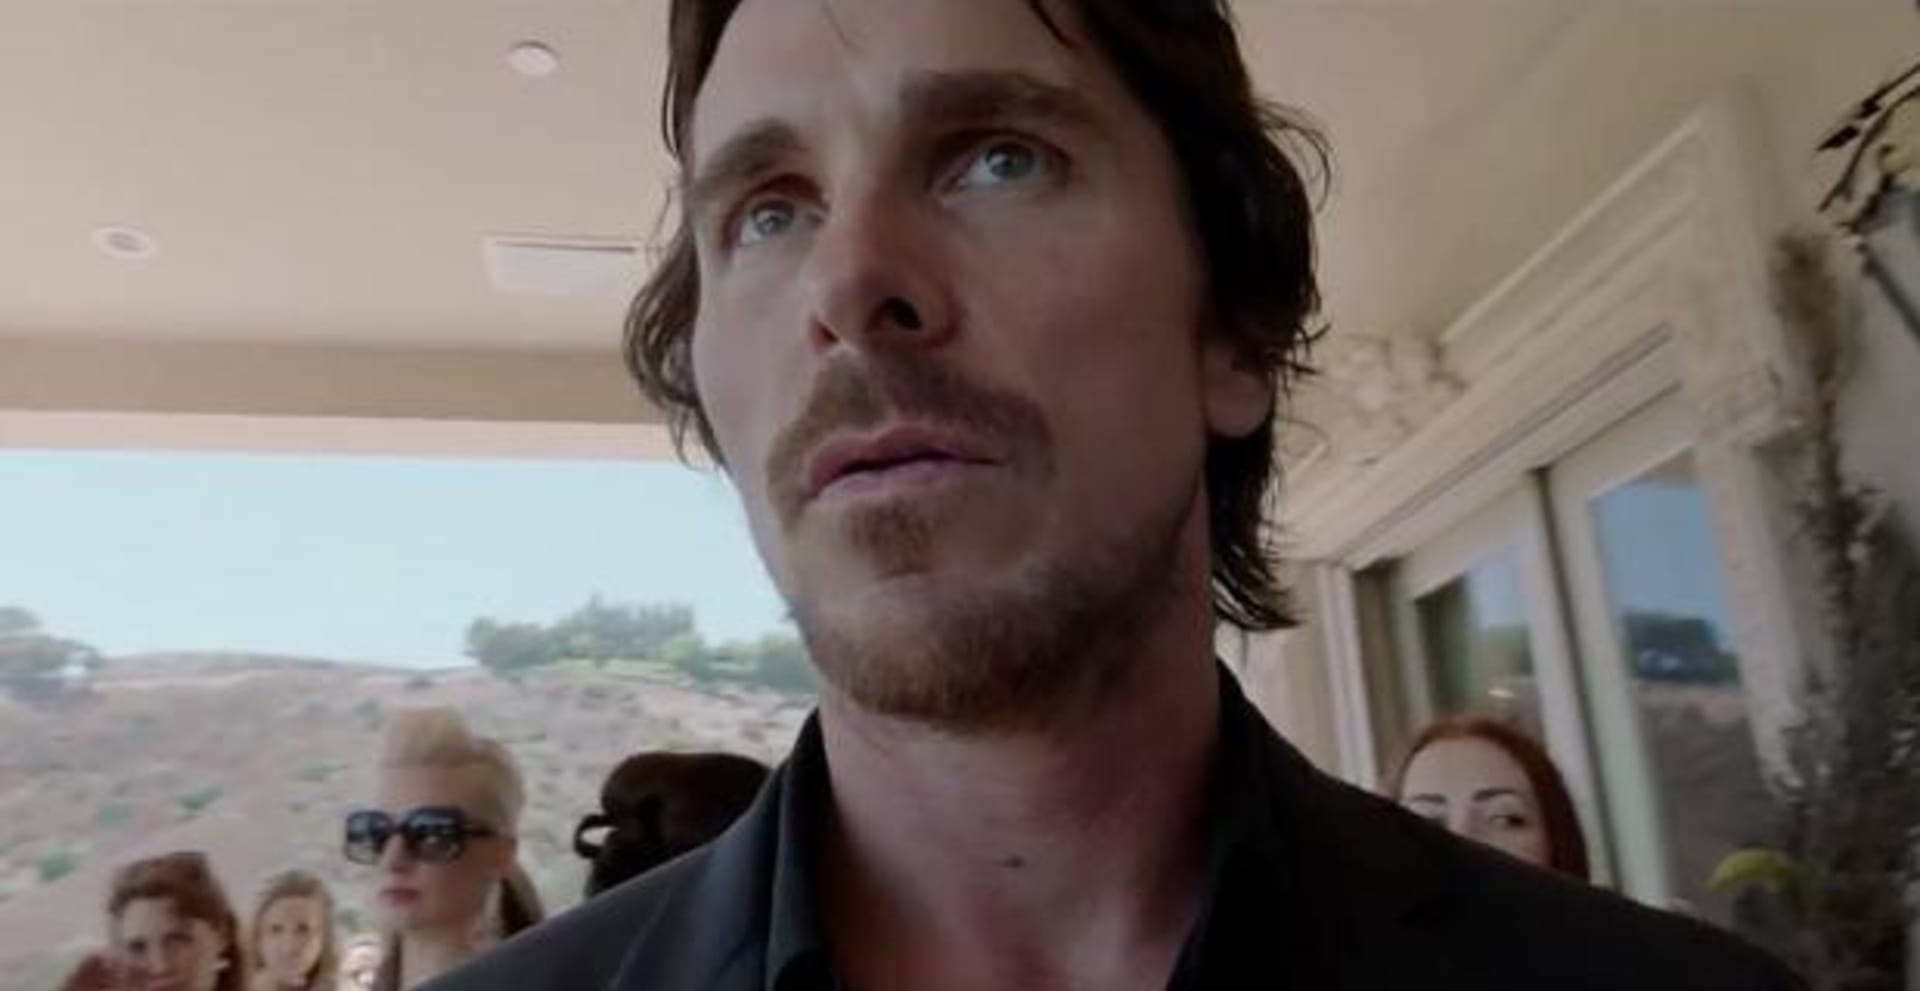 Christian Bale v nejnovější roli